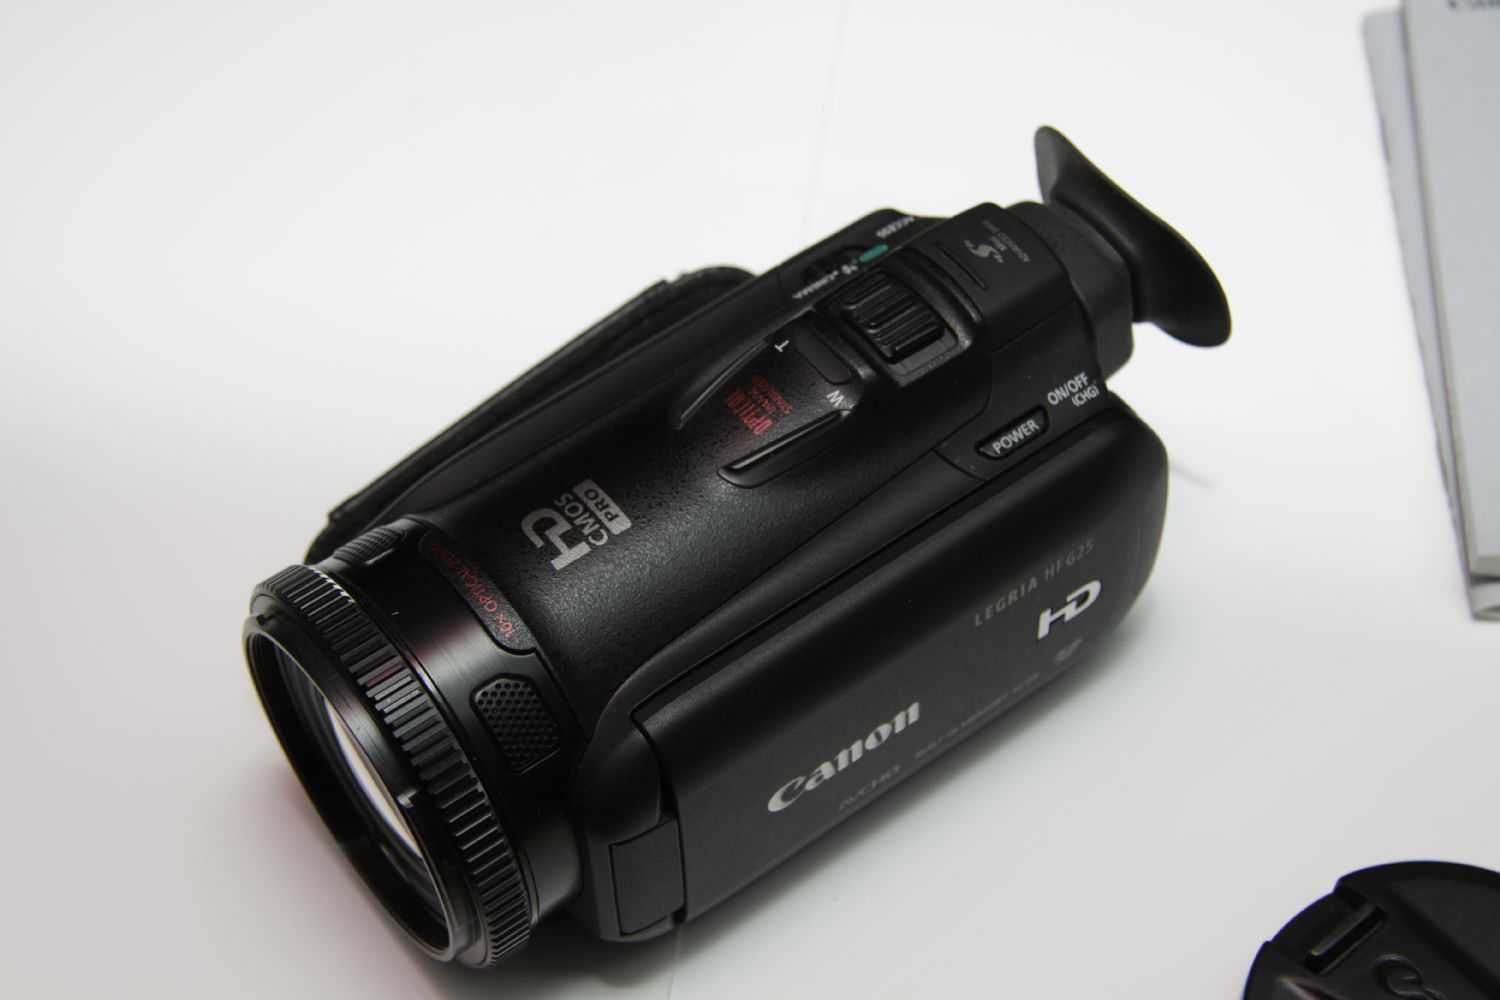 Видеокамера canon legria hf g25 — купить, цена и характеристики, отзывы